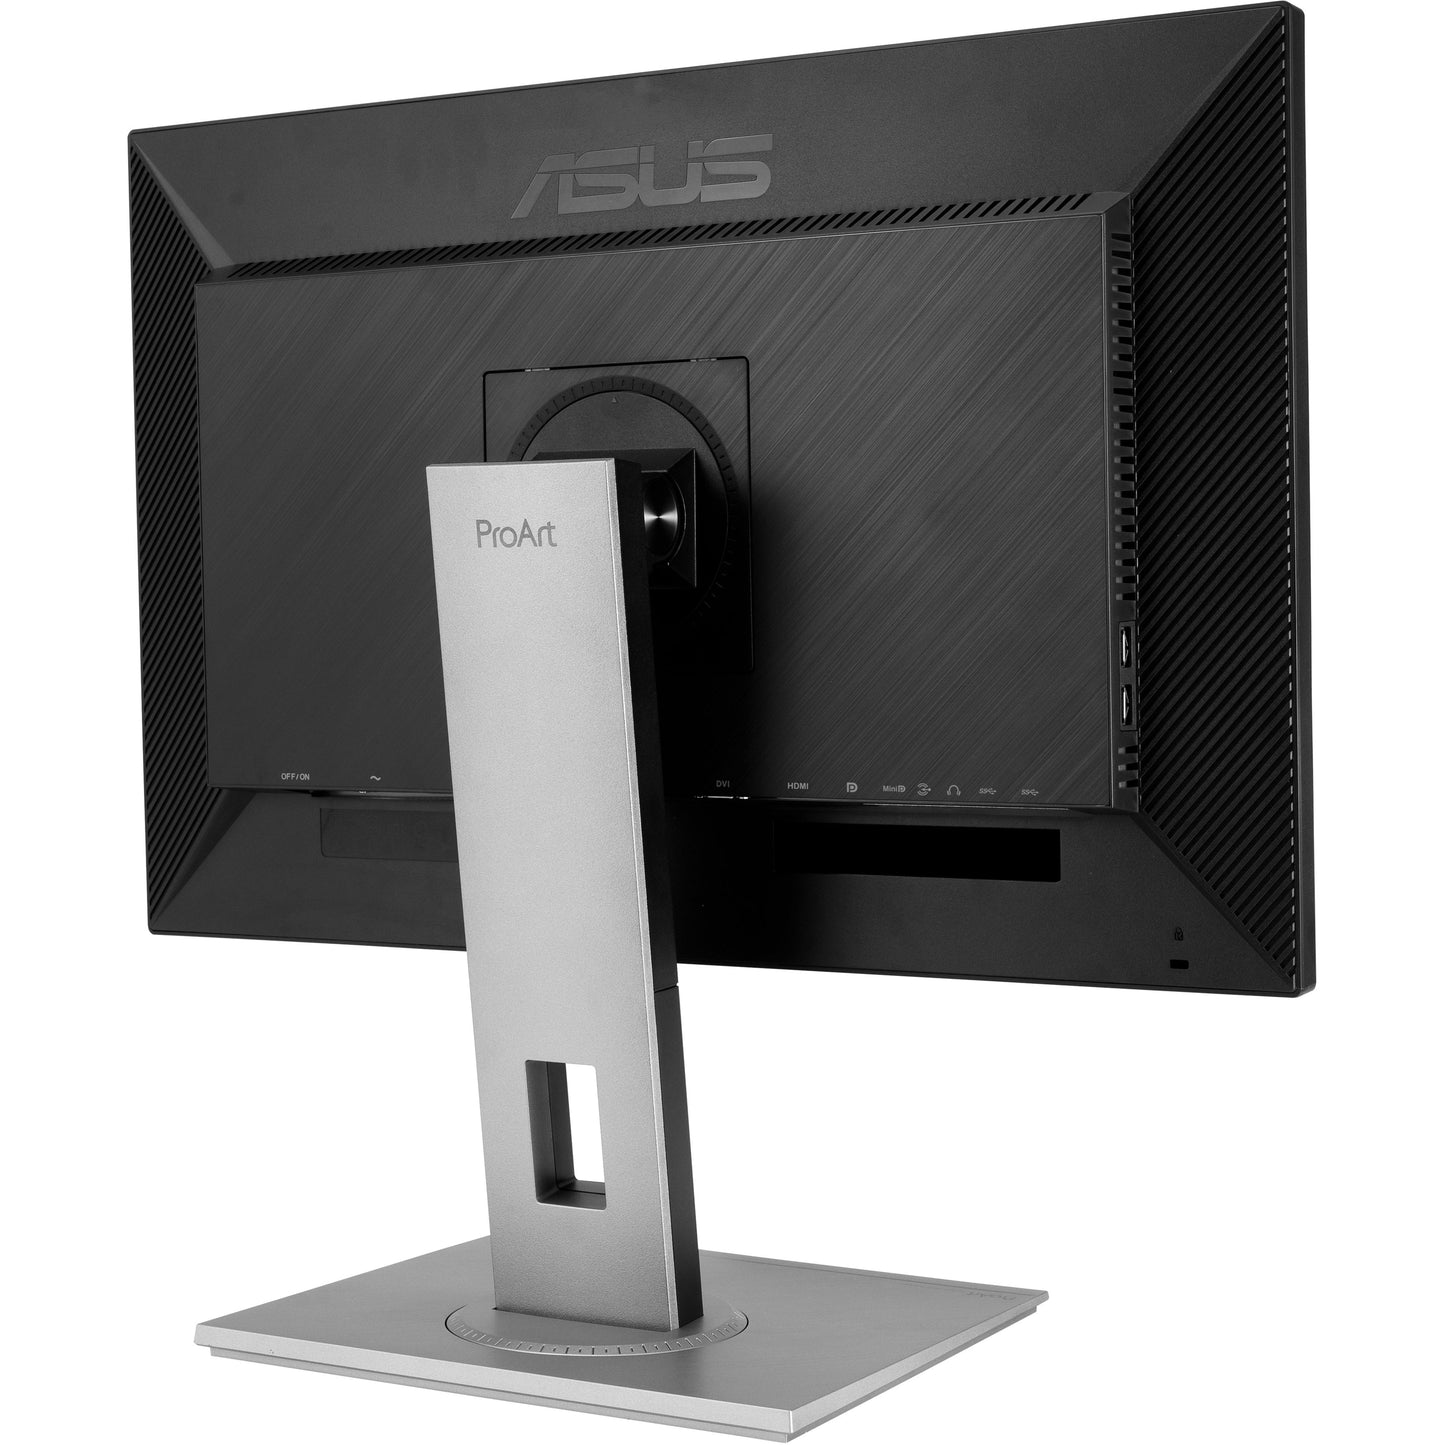 Asus ProArt PA278QV 27" WQHD LCD Monitor - 16:9 - Black